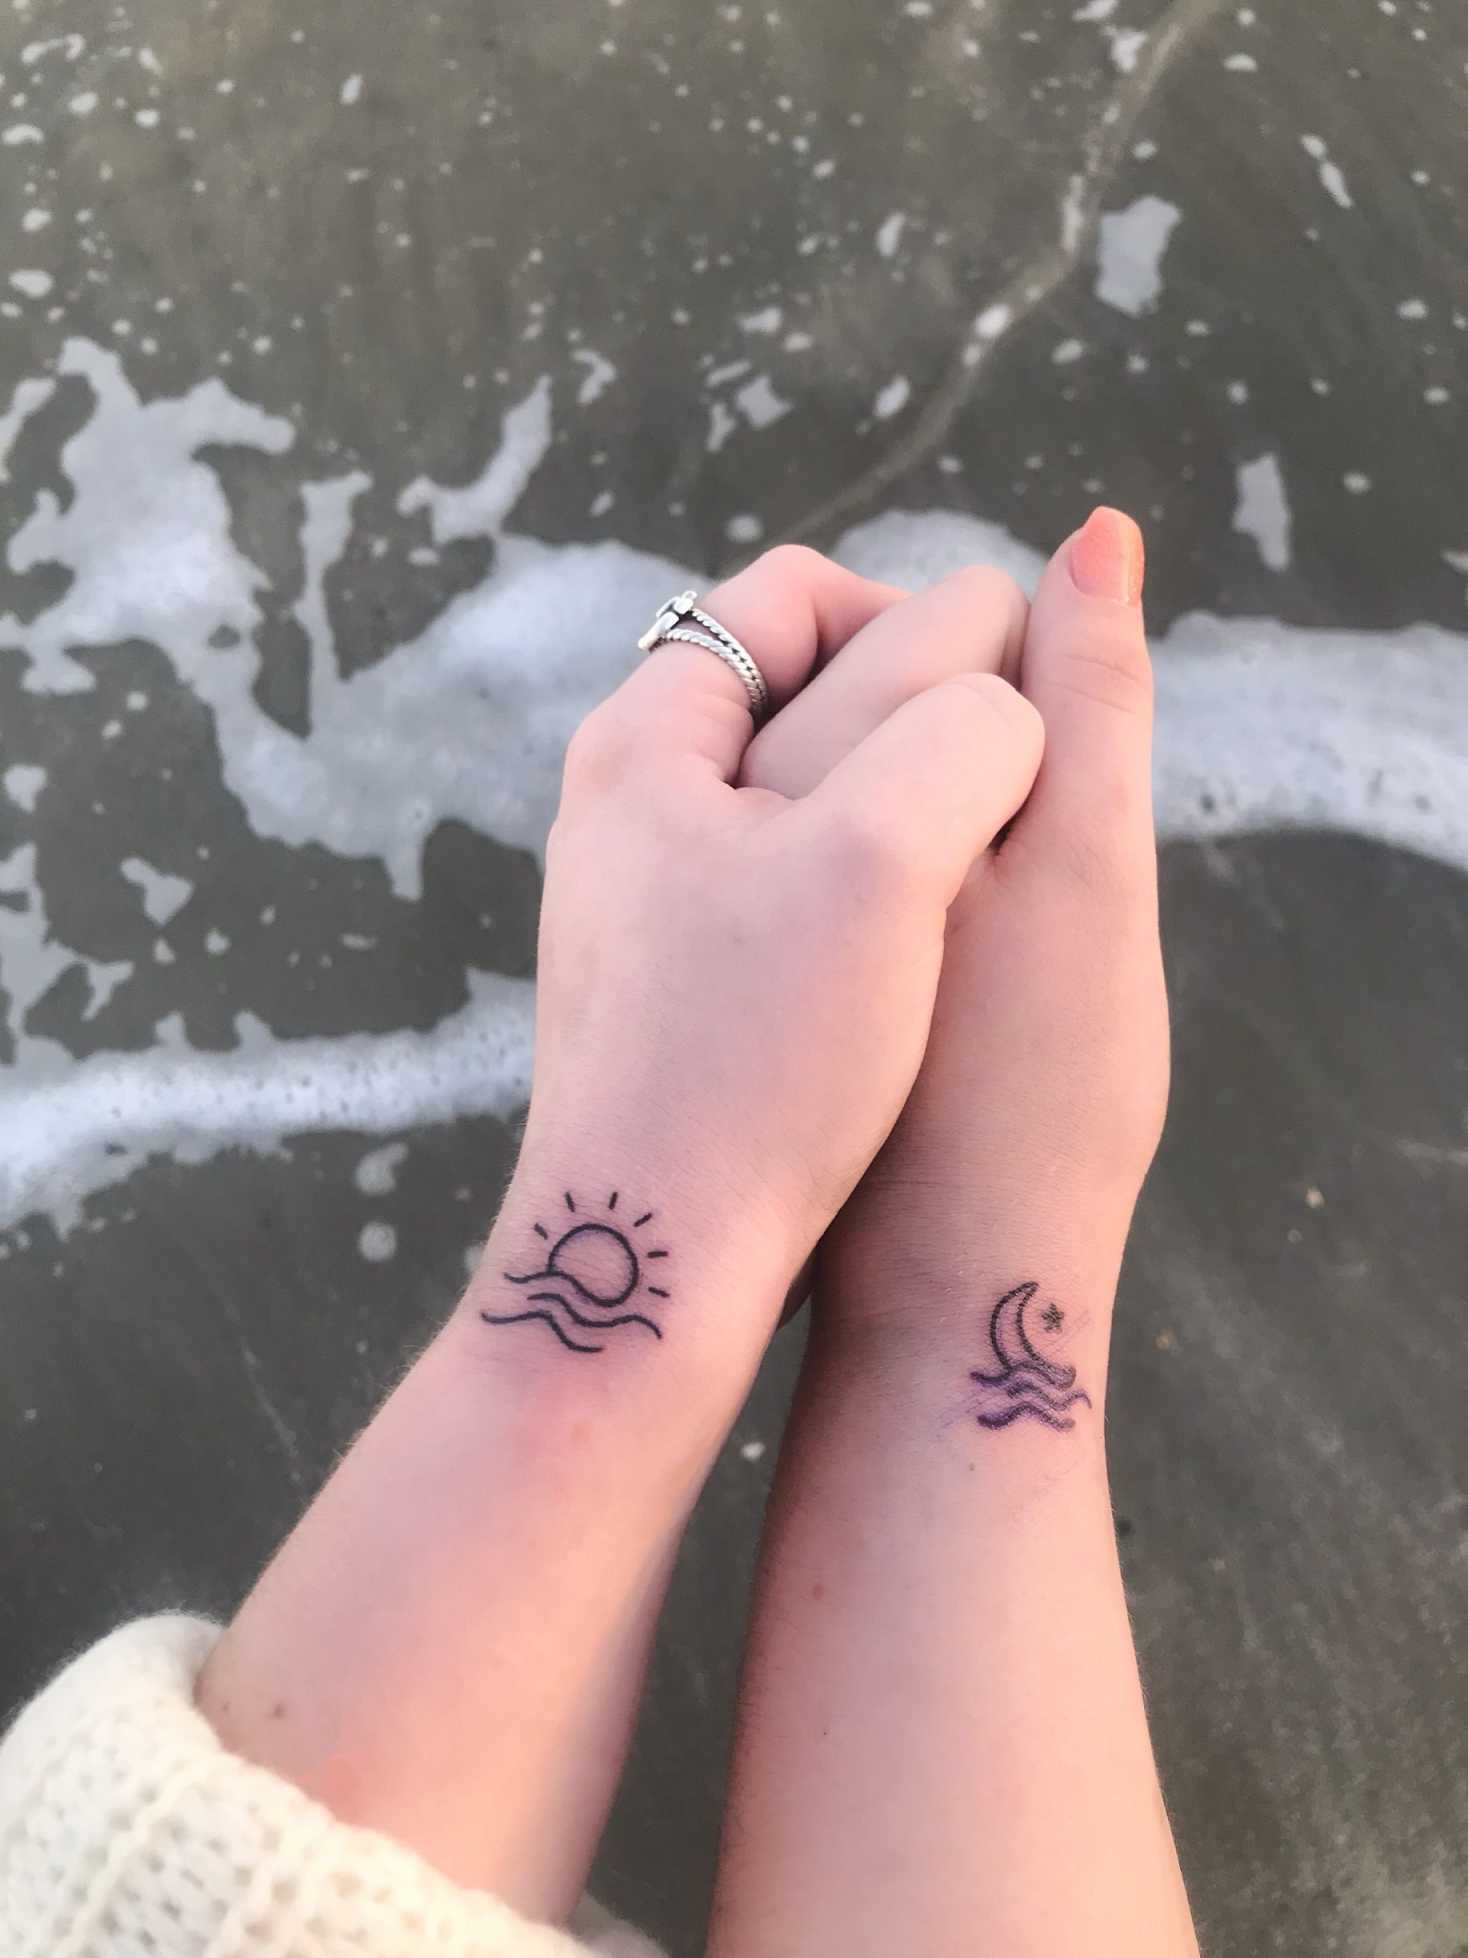 Small beach tattoos  Small beach tattoos, Beach tattoo, Small tattoos